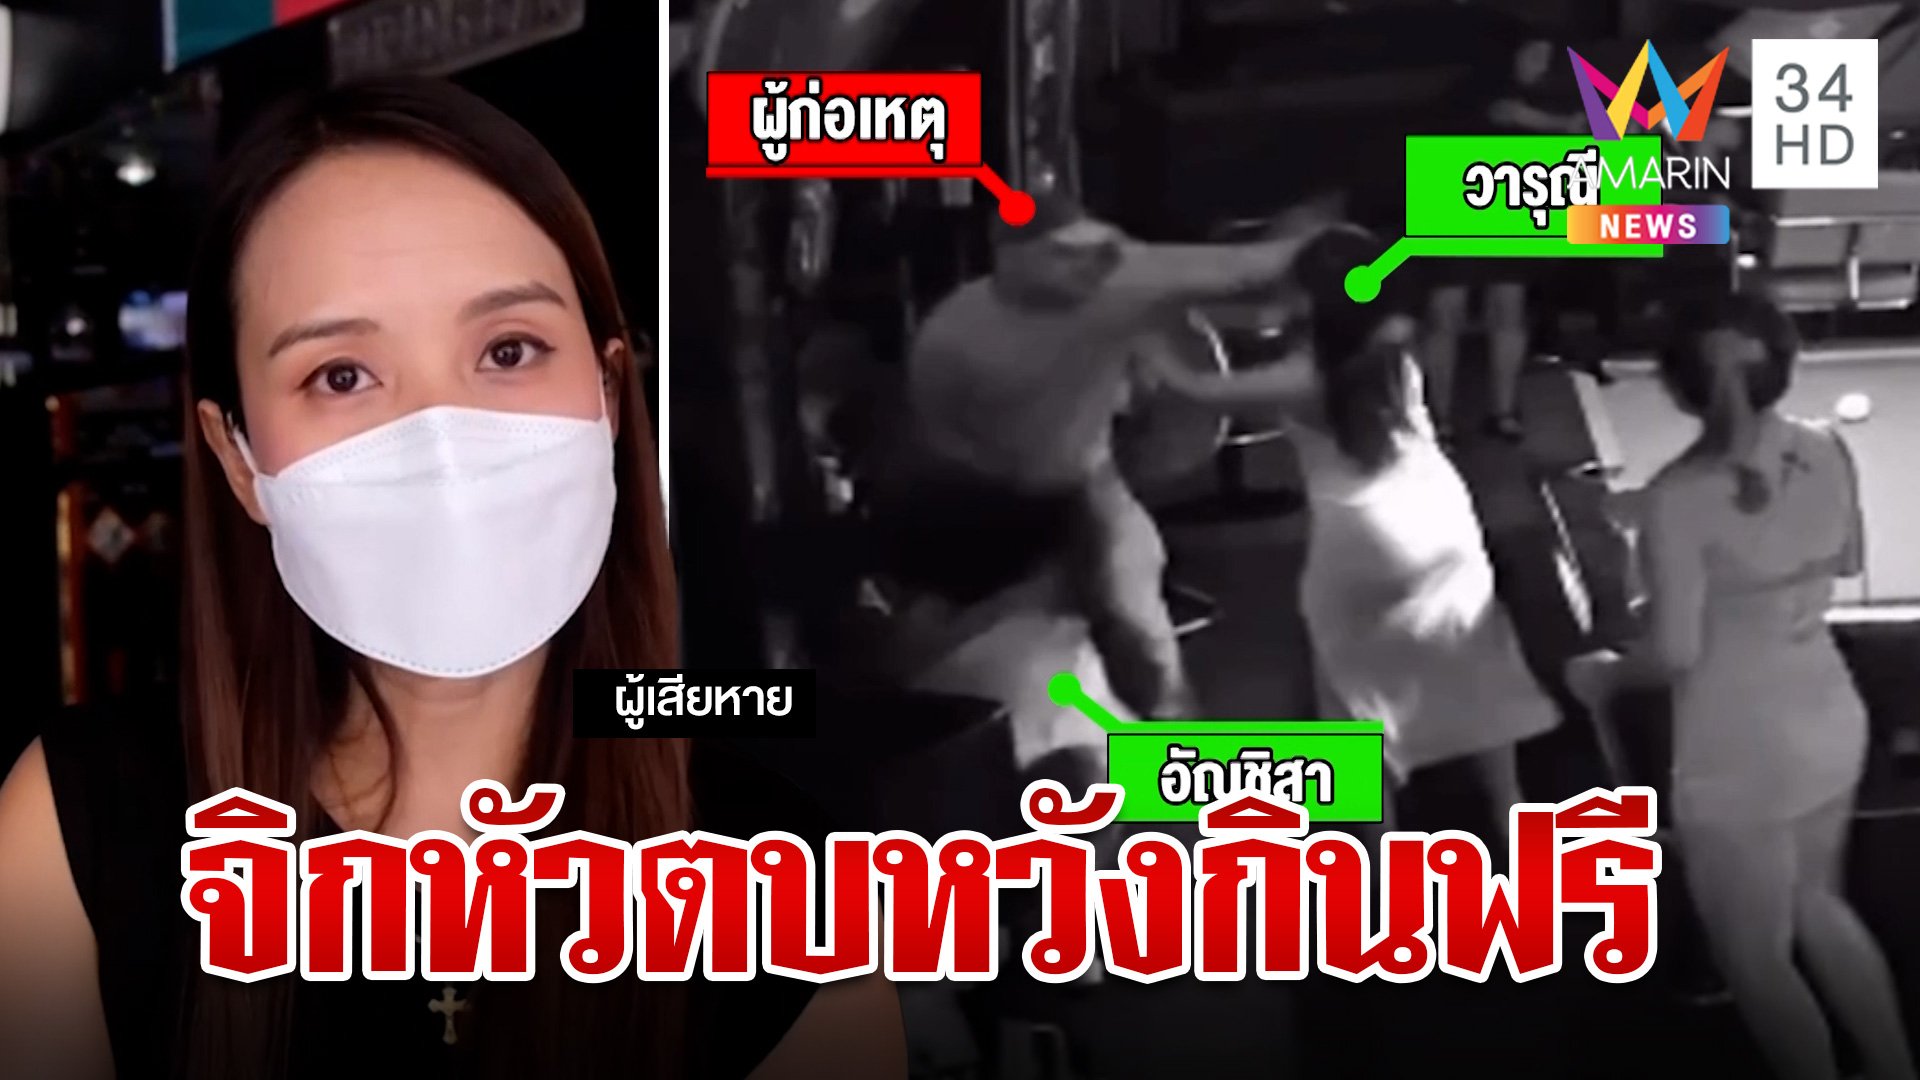 ฝรั่งหัวหมอหวังชักดาบค่าเบียร์ตบสาวน่วม เมียไทยหน้าบางลั่นผัวโมโหร้าย  | ทุบโต๊ะข่าว | 7 เม.ย. 67 | AMARIN TVHD34